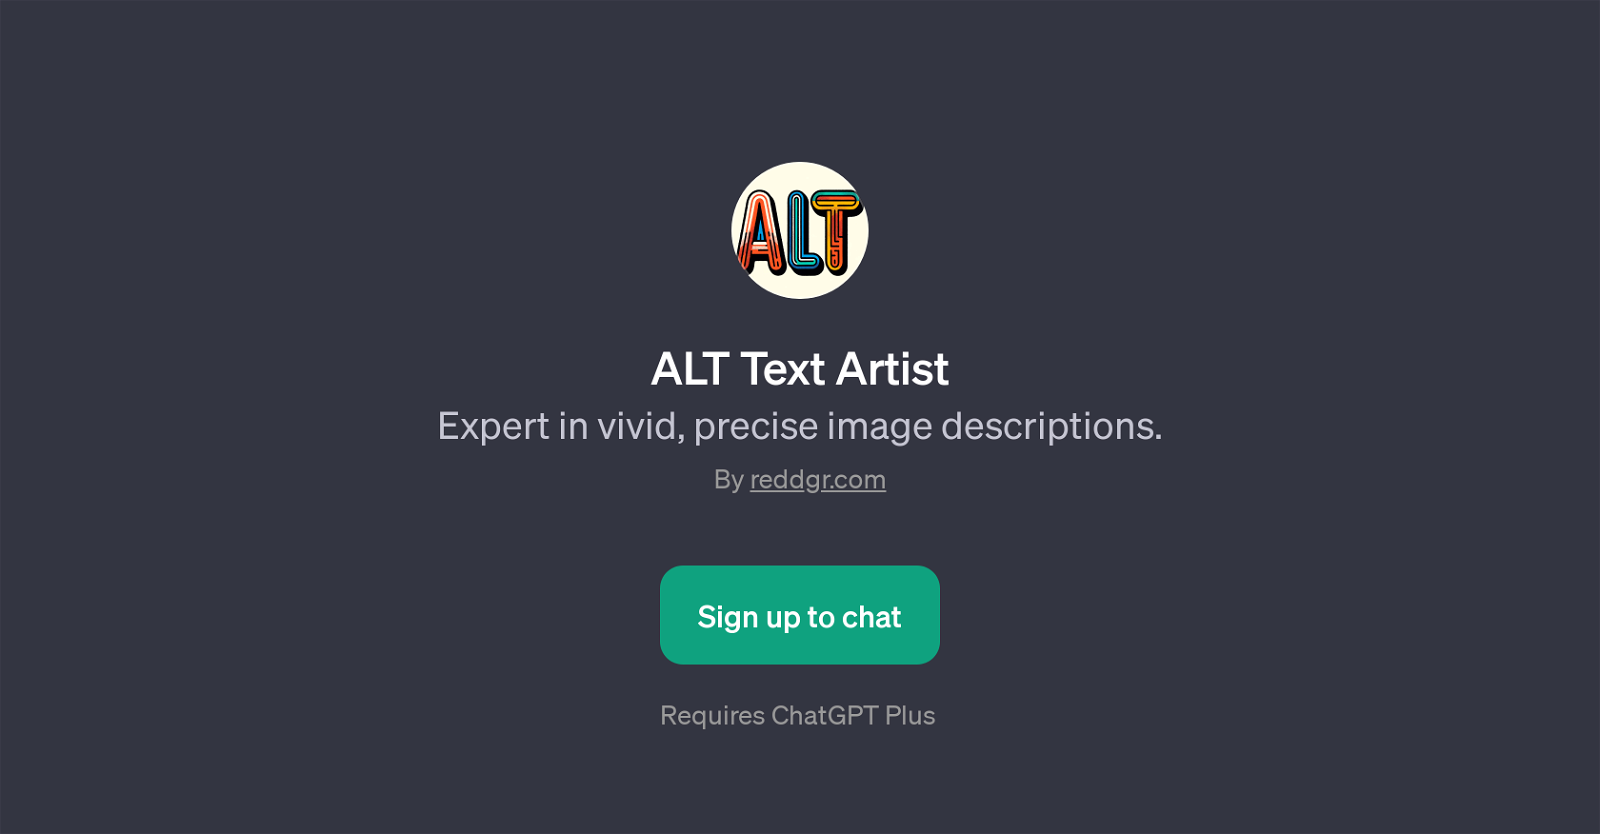 ALT Text Artist website